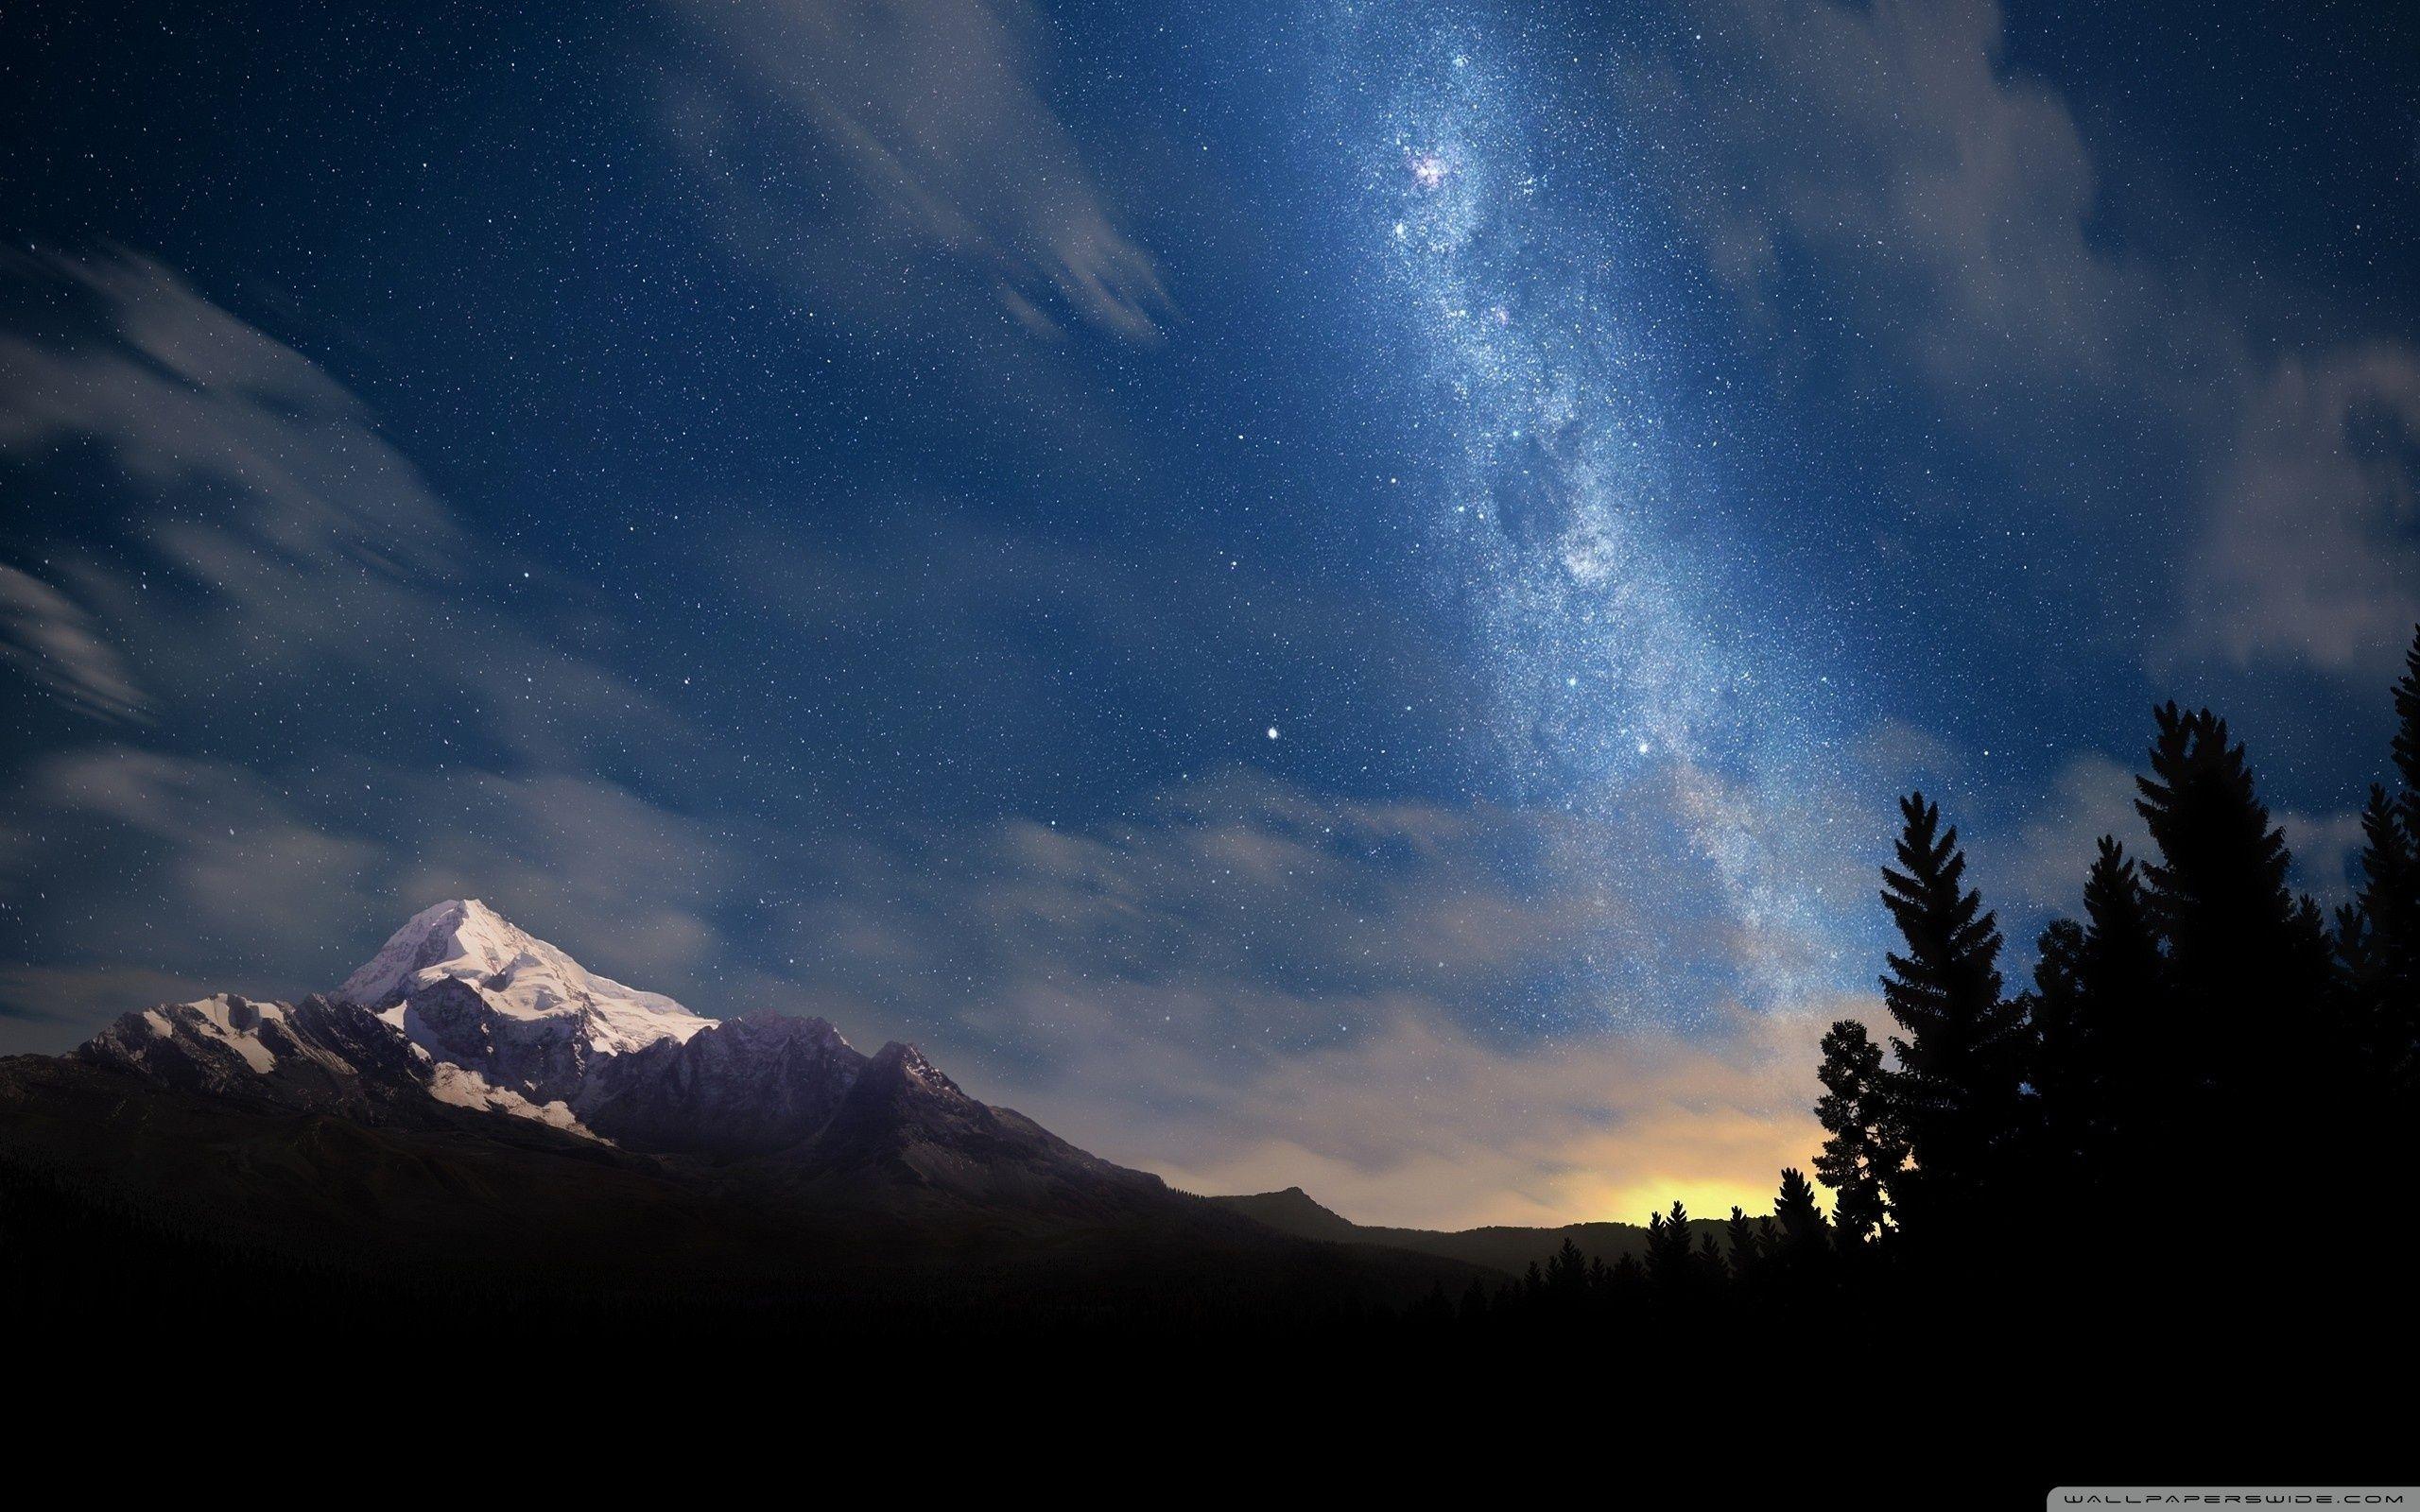 Hình nền đêm bầu trời 4K khiến bạn cảm thấy như đang đứng dưới trời đen đầy sao. Độ chi tiết tuyệt vời của hình ảnh sẽ khiến bạn ấn tượng với các vì sao sáng lấp lánh. Hãy xem ngay để trải nghiệm bầu trời đêm lấp lánh trong lòng bạn.